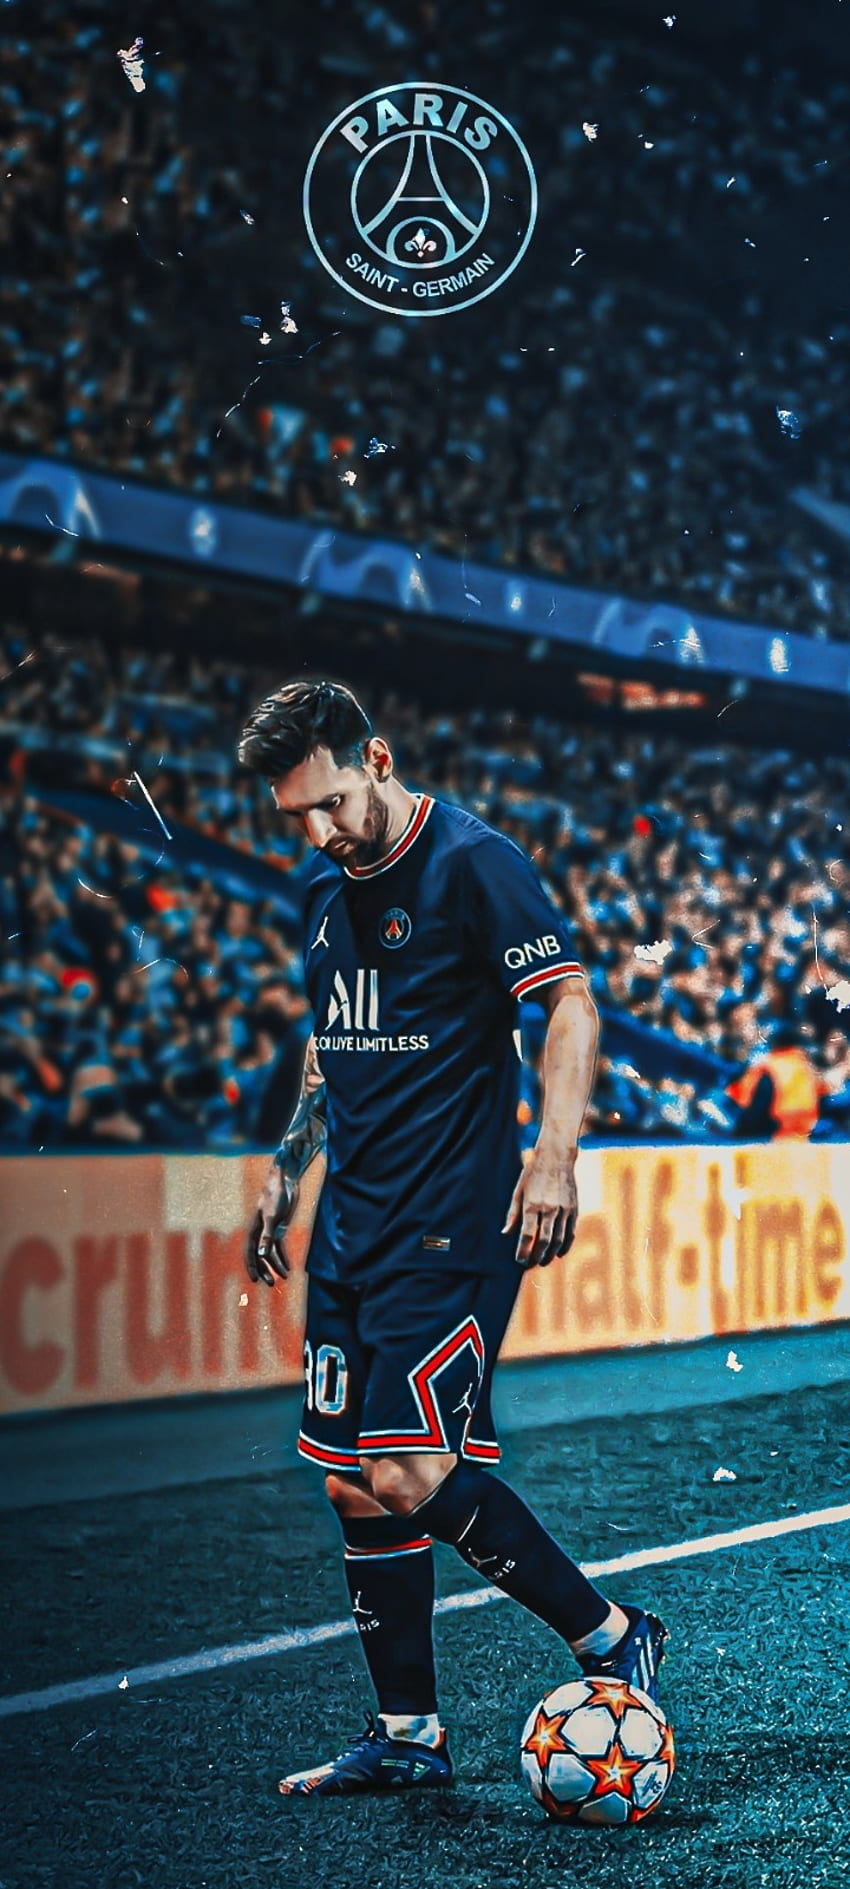 Messi PSG: Lionel Messi trong màu áo PSG chắc chắn sẽ tạo ra những thước phim ấn tượng cho các fan hâm mộ trên toàn thế giới. Hãy xem những hình ảnh đầu tiên của anh tại PSG để cảm nhận sức hút và đẳng cấp của siêu sao bóng đá đương đại này.